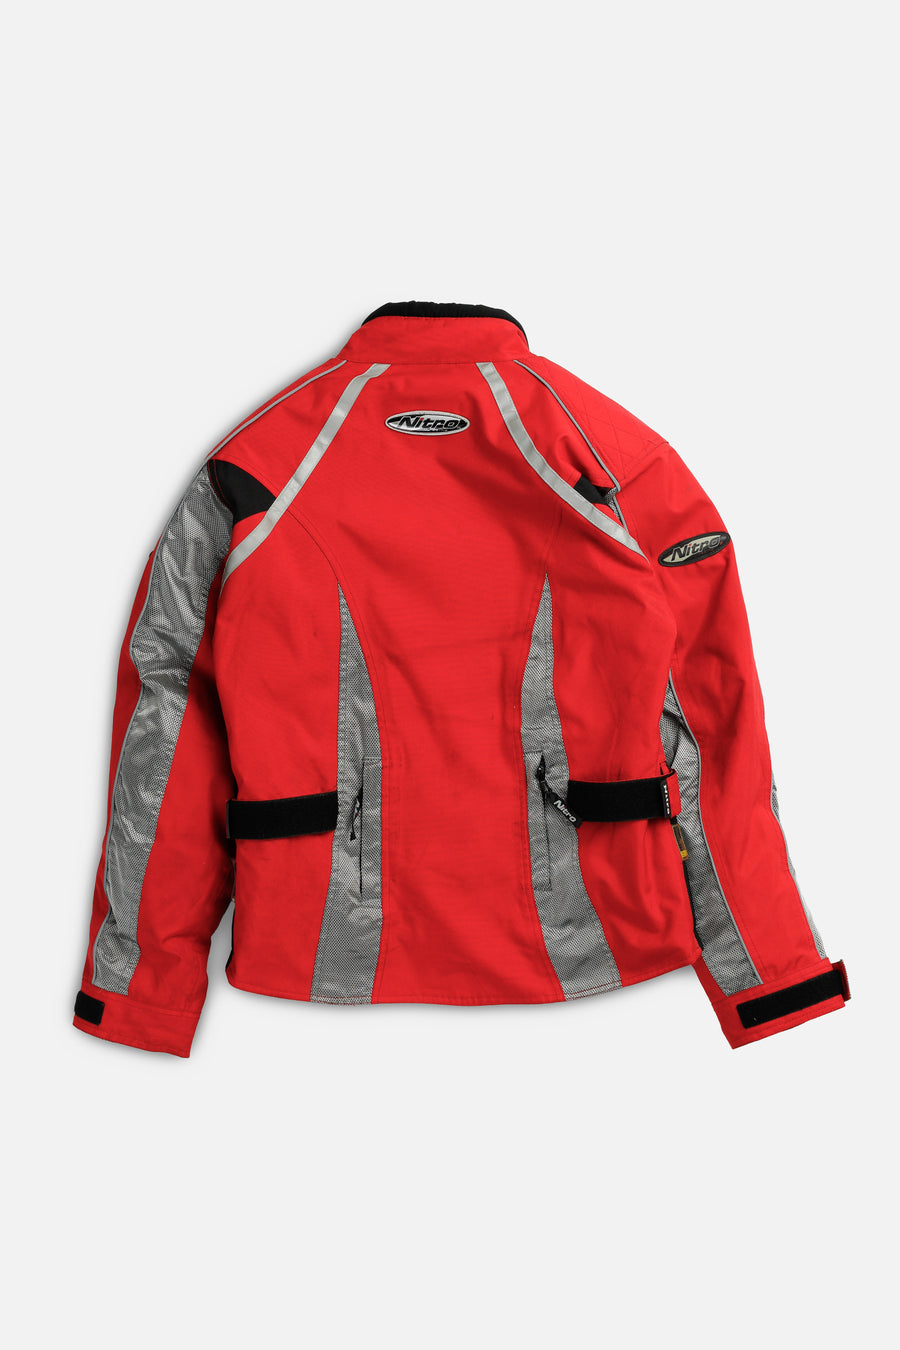 Vintage Racing Jacket - Women's S